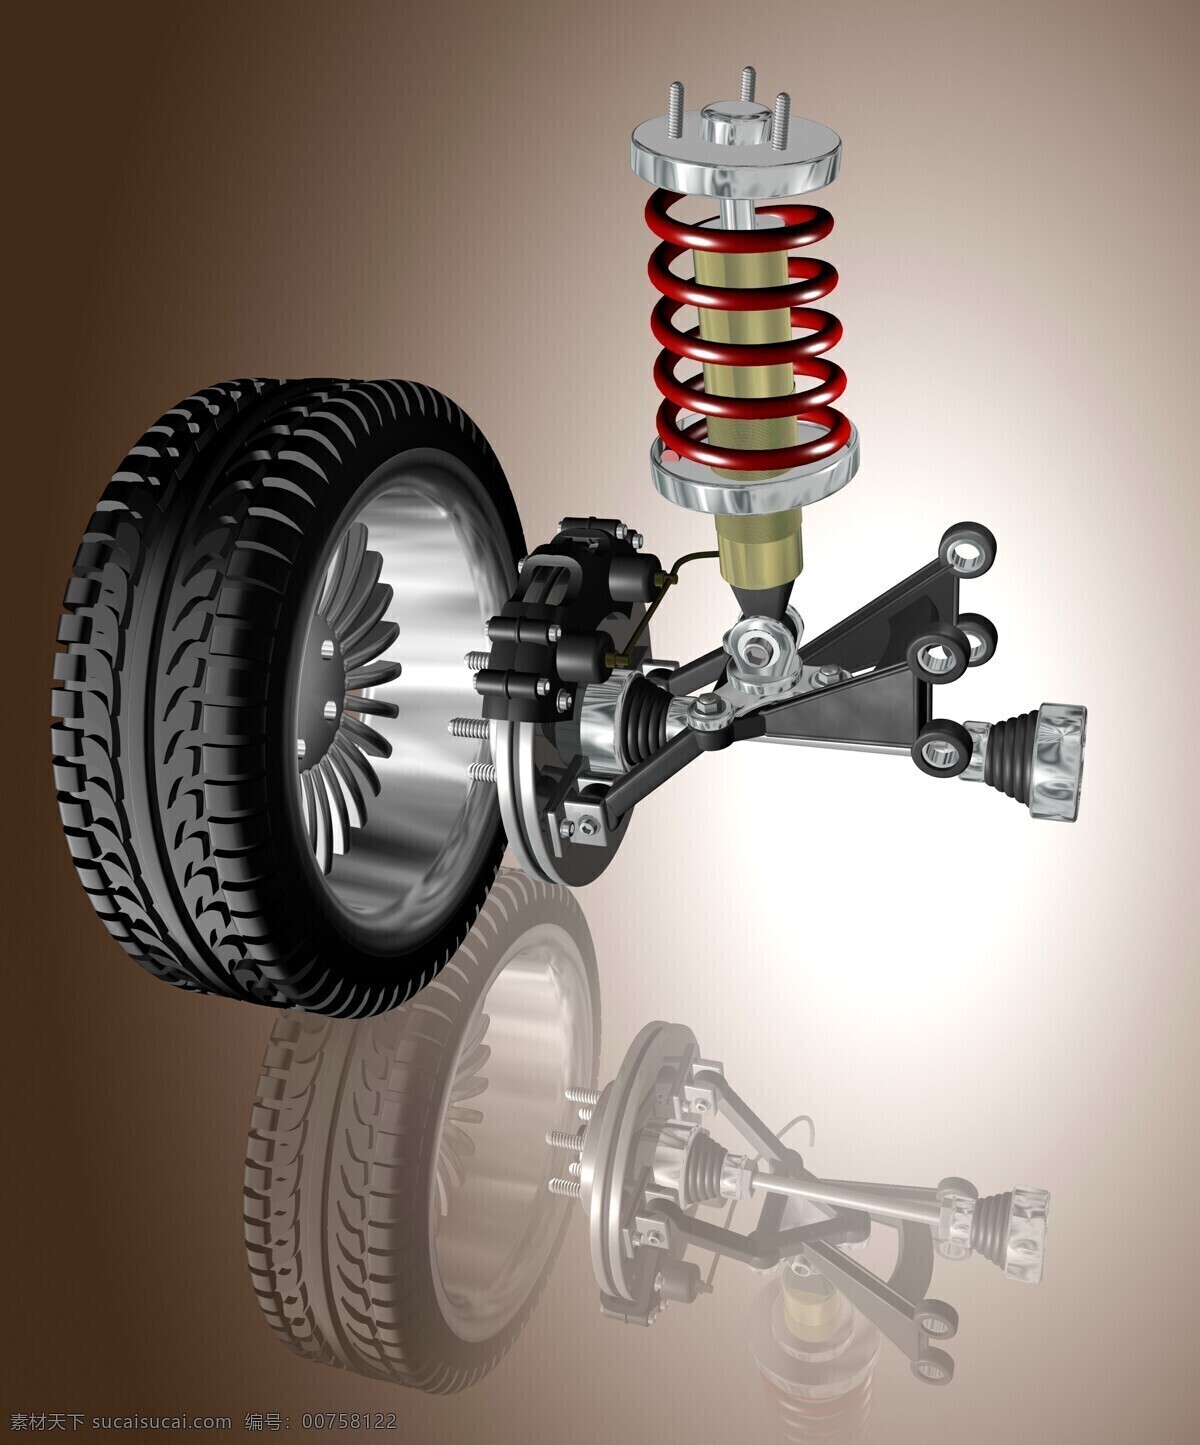 减震 弹簧 车胎 汽车轮胎 轿车轮胎 车轮 轮毂 汽车图片 现代科技